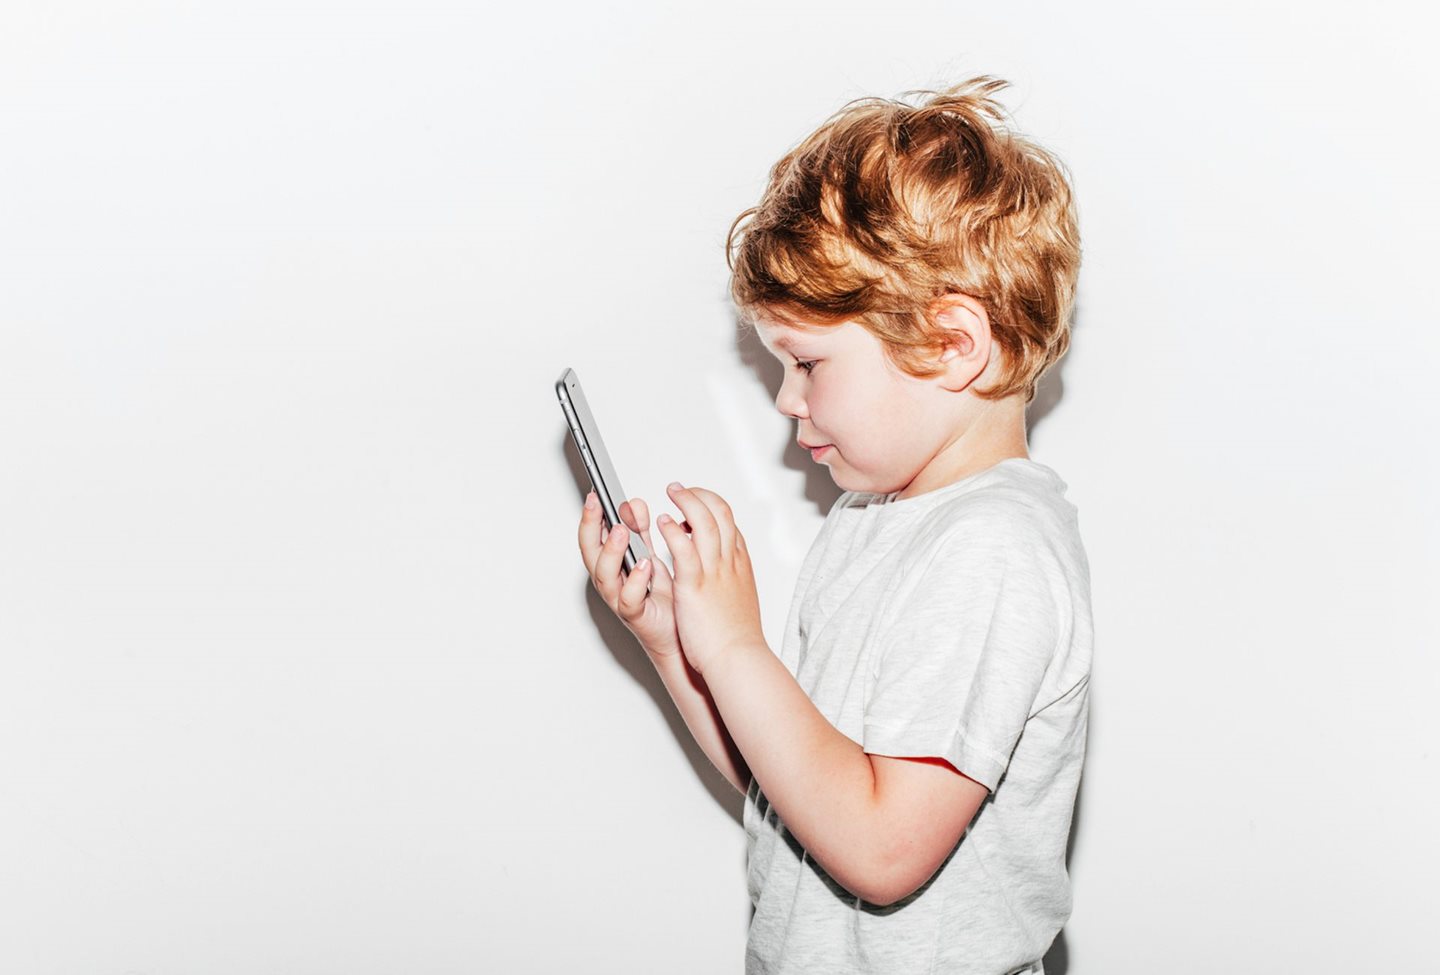 Mobiteli za djecu: Kada previše postaje previše?